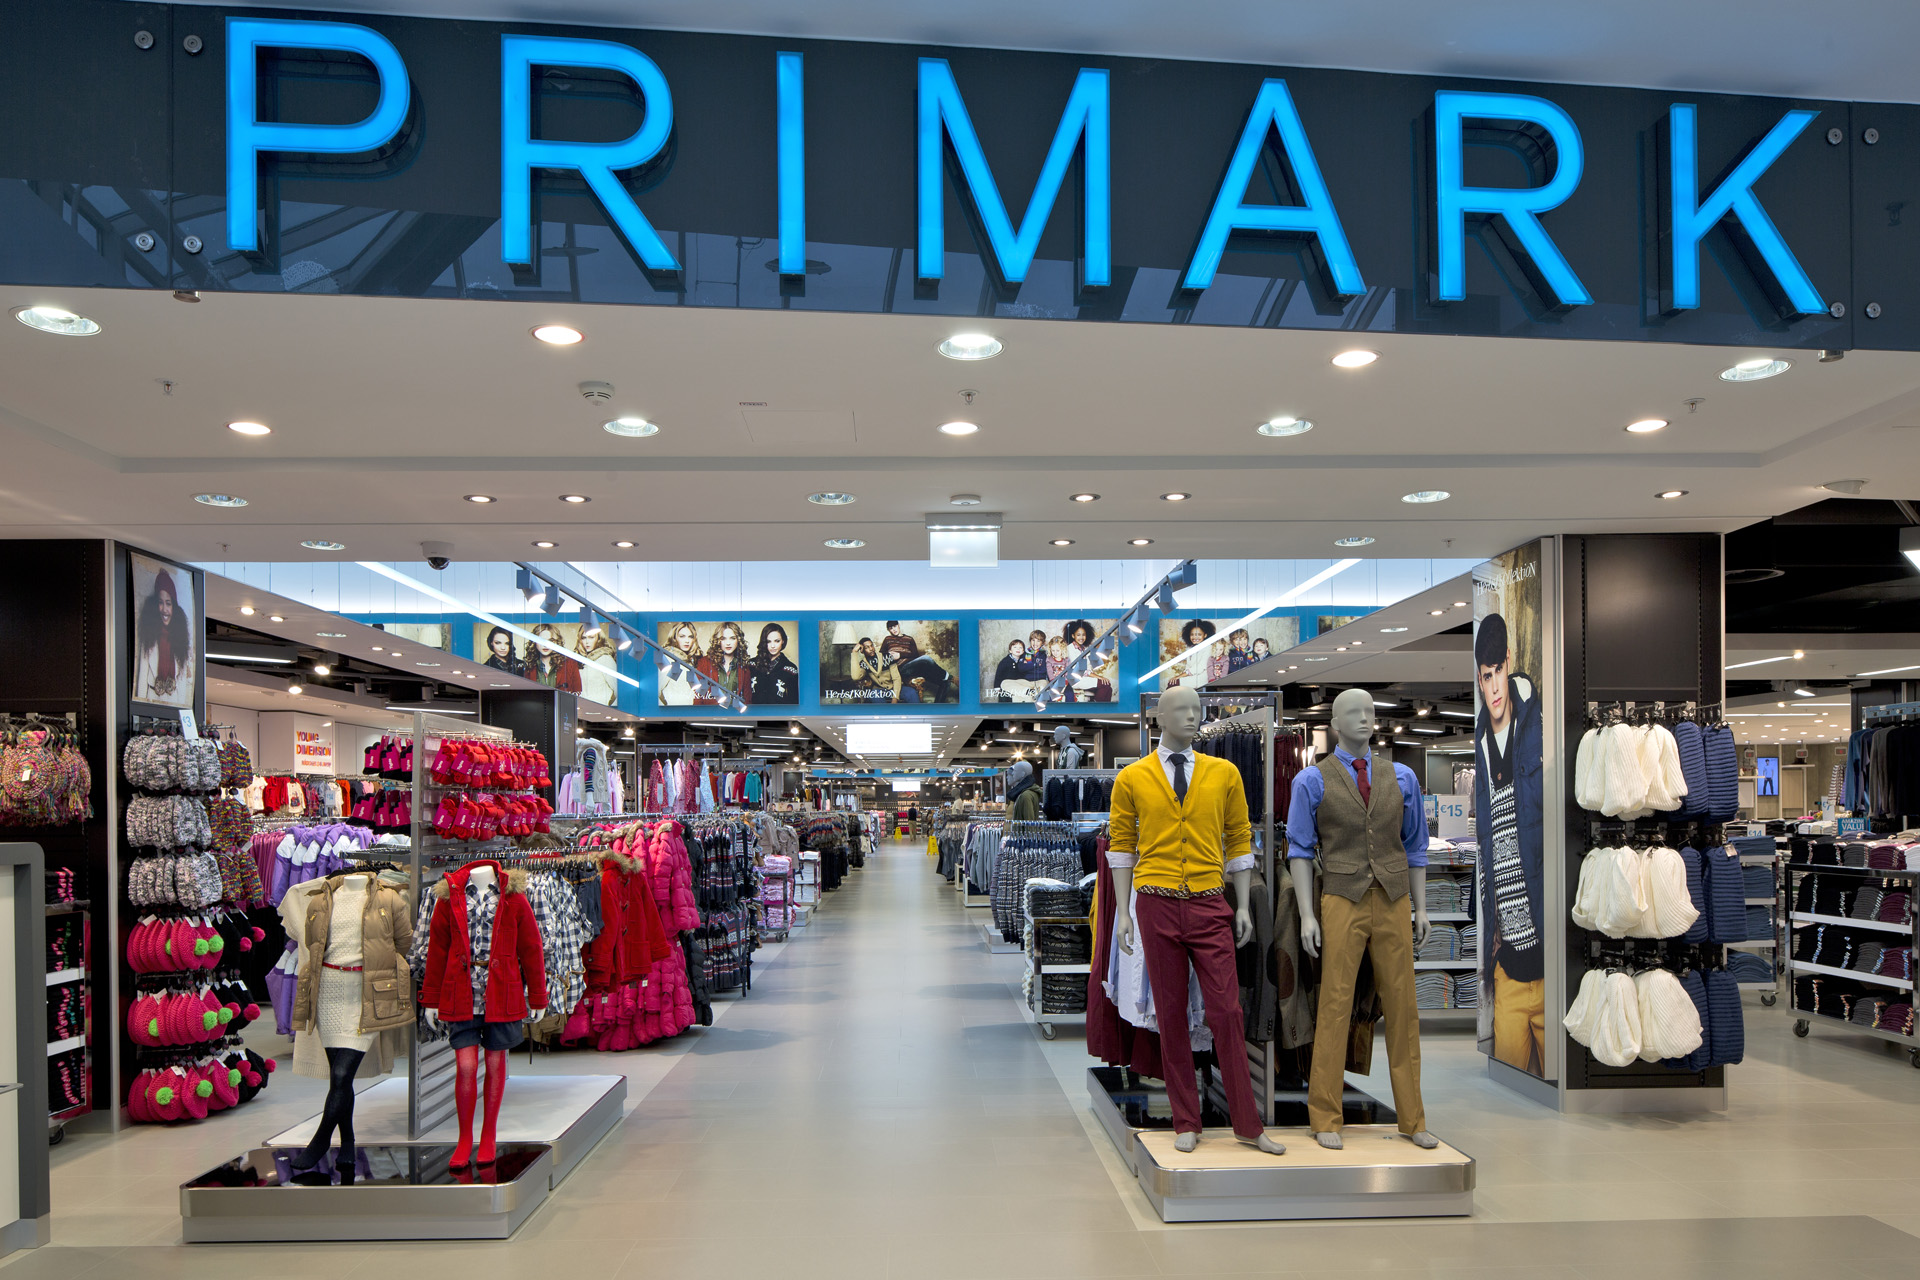 Primark, shopping low cost: il negozio aprirà in Campania